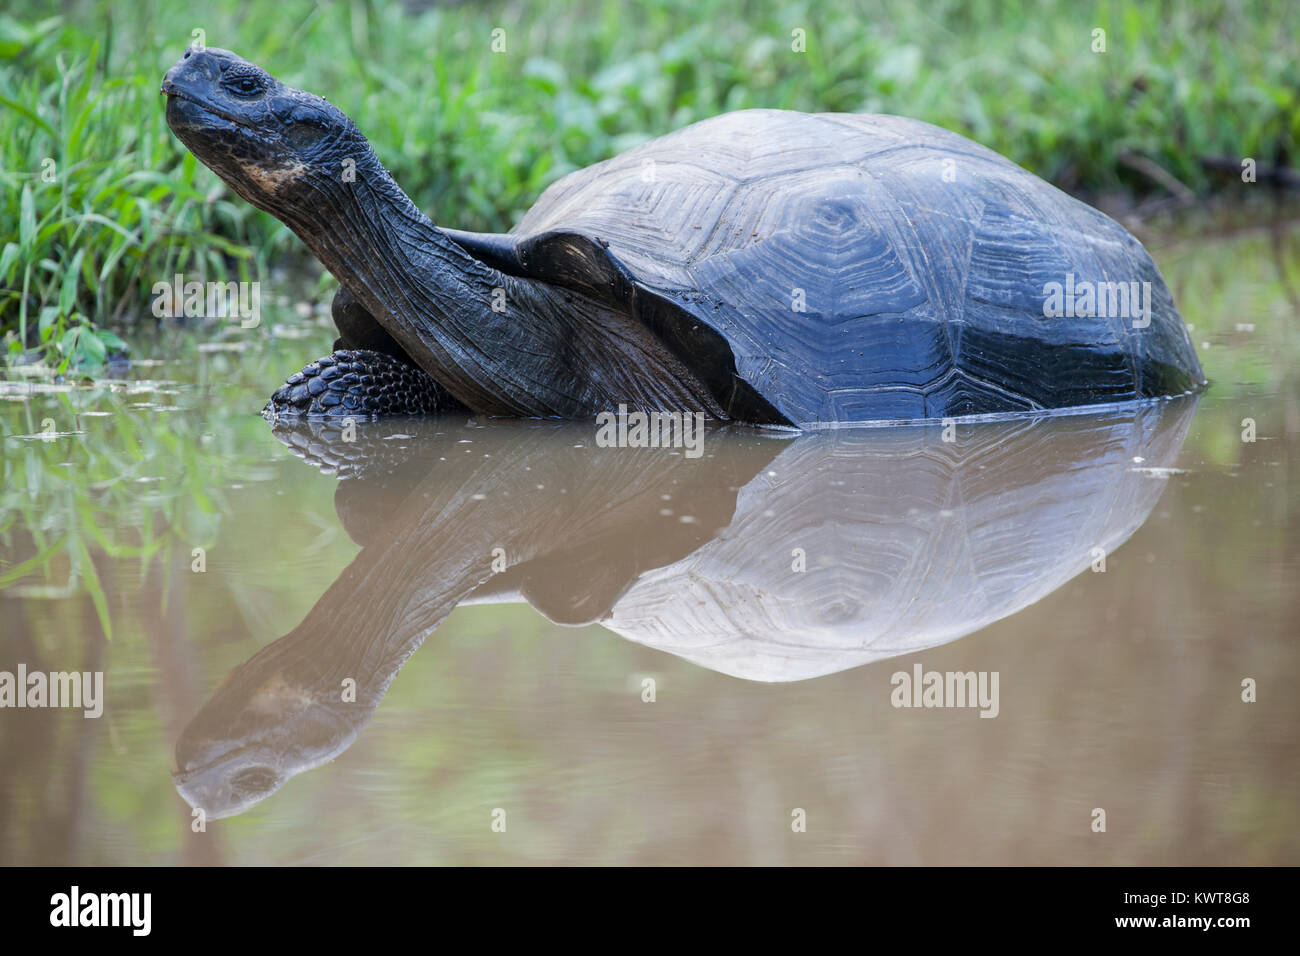 A Galapagos giant tortoise (Chelonoidis nigra porteri) in a pond (Santa Cruz island, Galapagos). Stock Photo